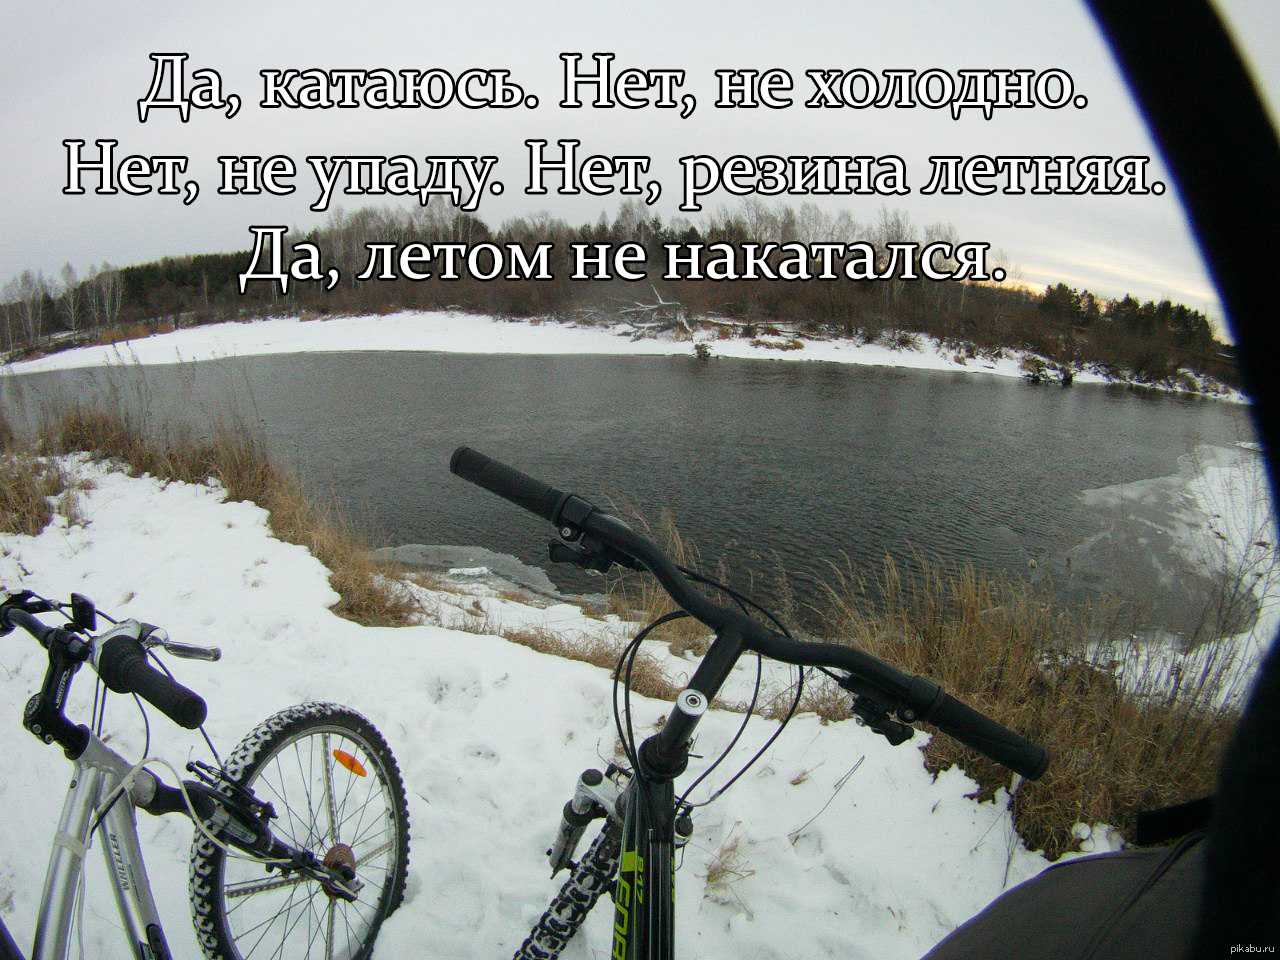 Анекдоты про велосипед » страница 2 » шуток shutok.ru » облако тегов » велосипед » страница 2